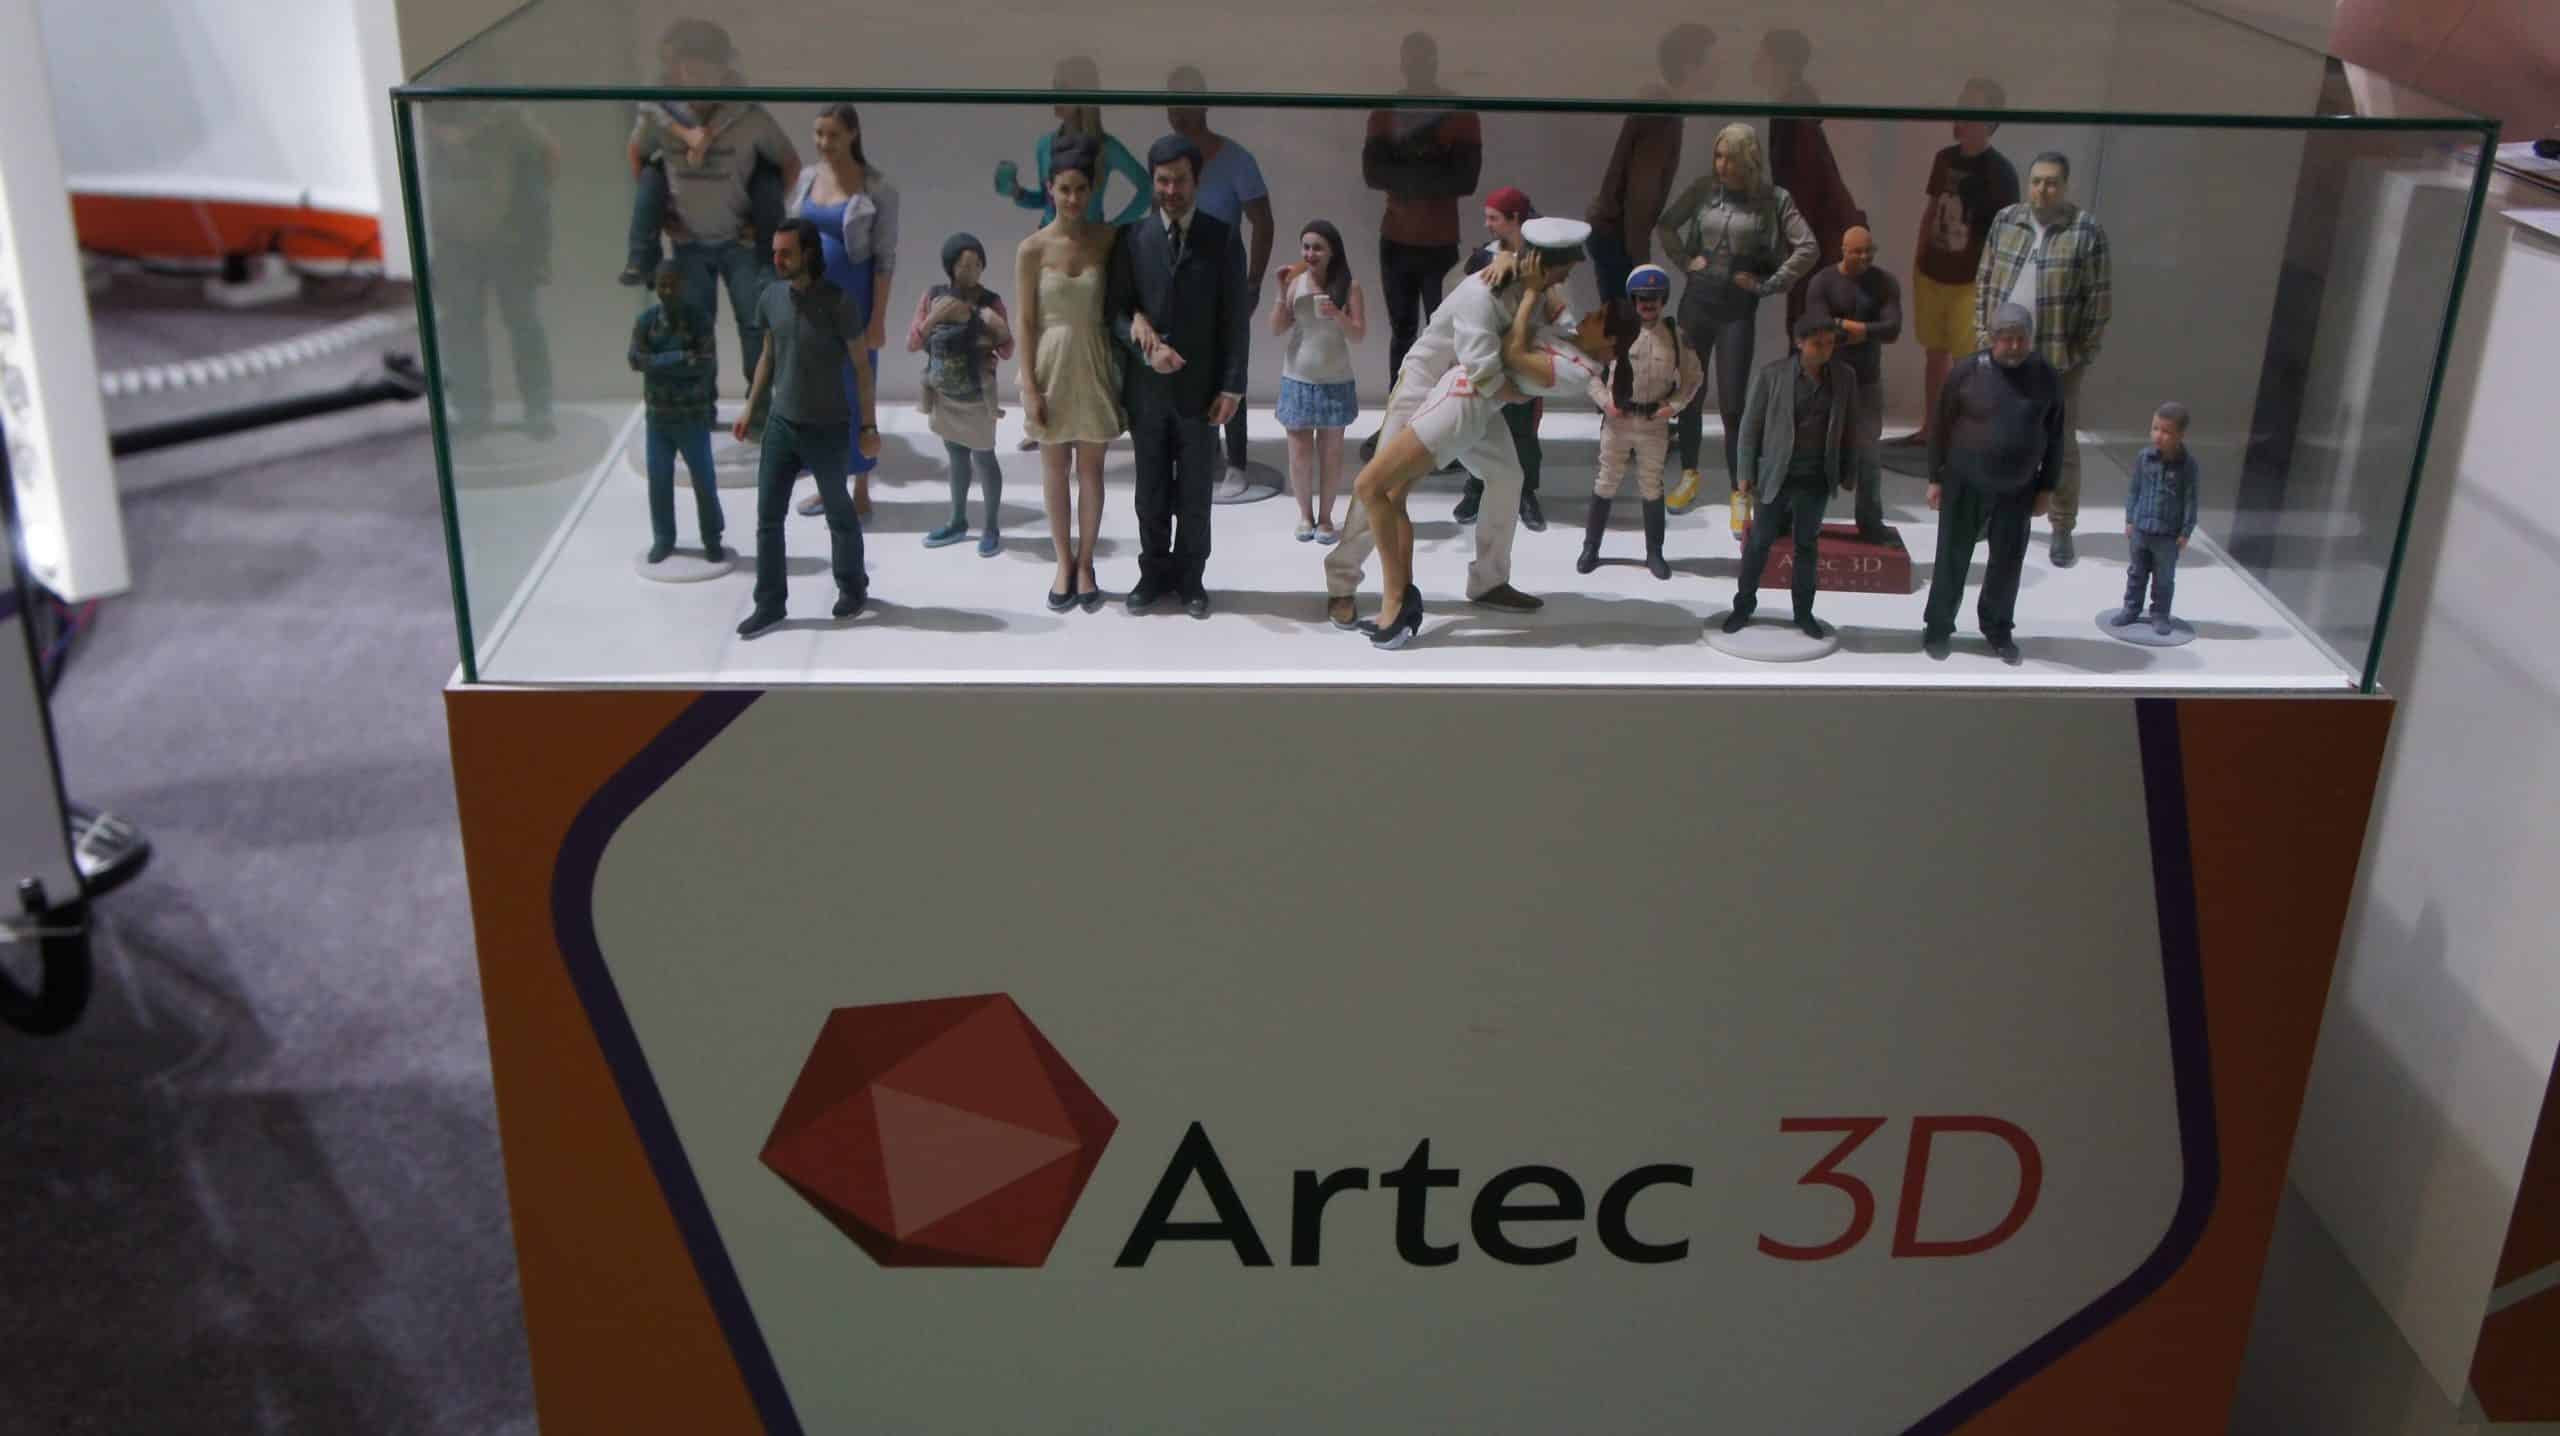 Artec 3D unveils world’s first high-speed full-body 3D scanner at Dubai Entertainment Amusement & Leisure Show (DEAL) 2015